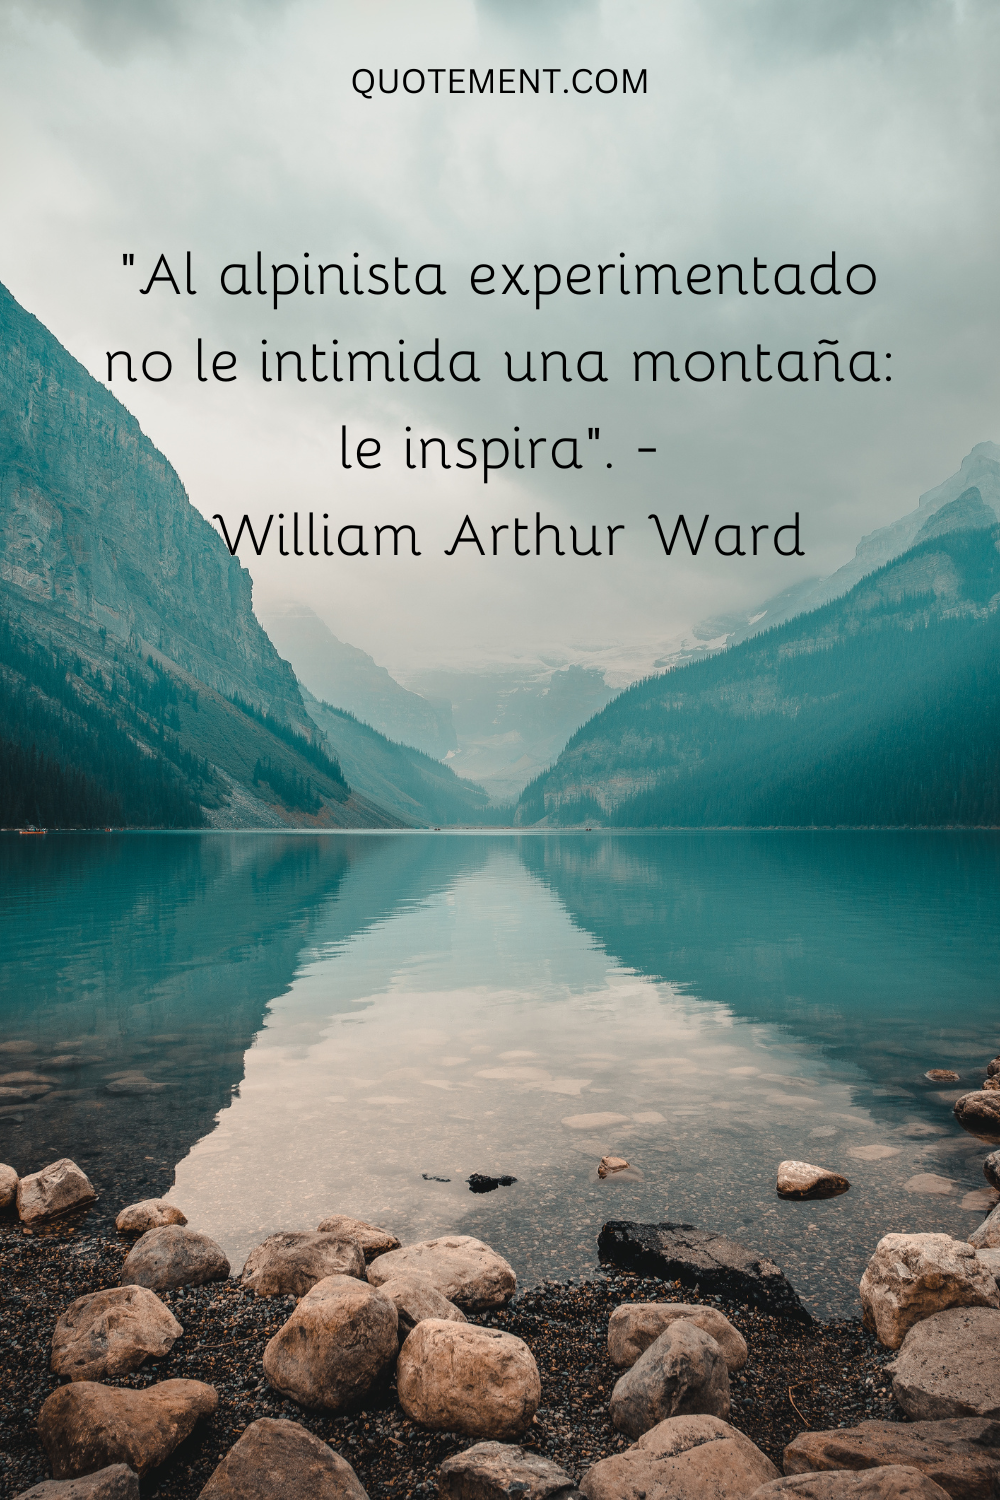 "Al alpinista experimentado no le intimida una montaña: le inspira". - William Arthur Ward